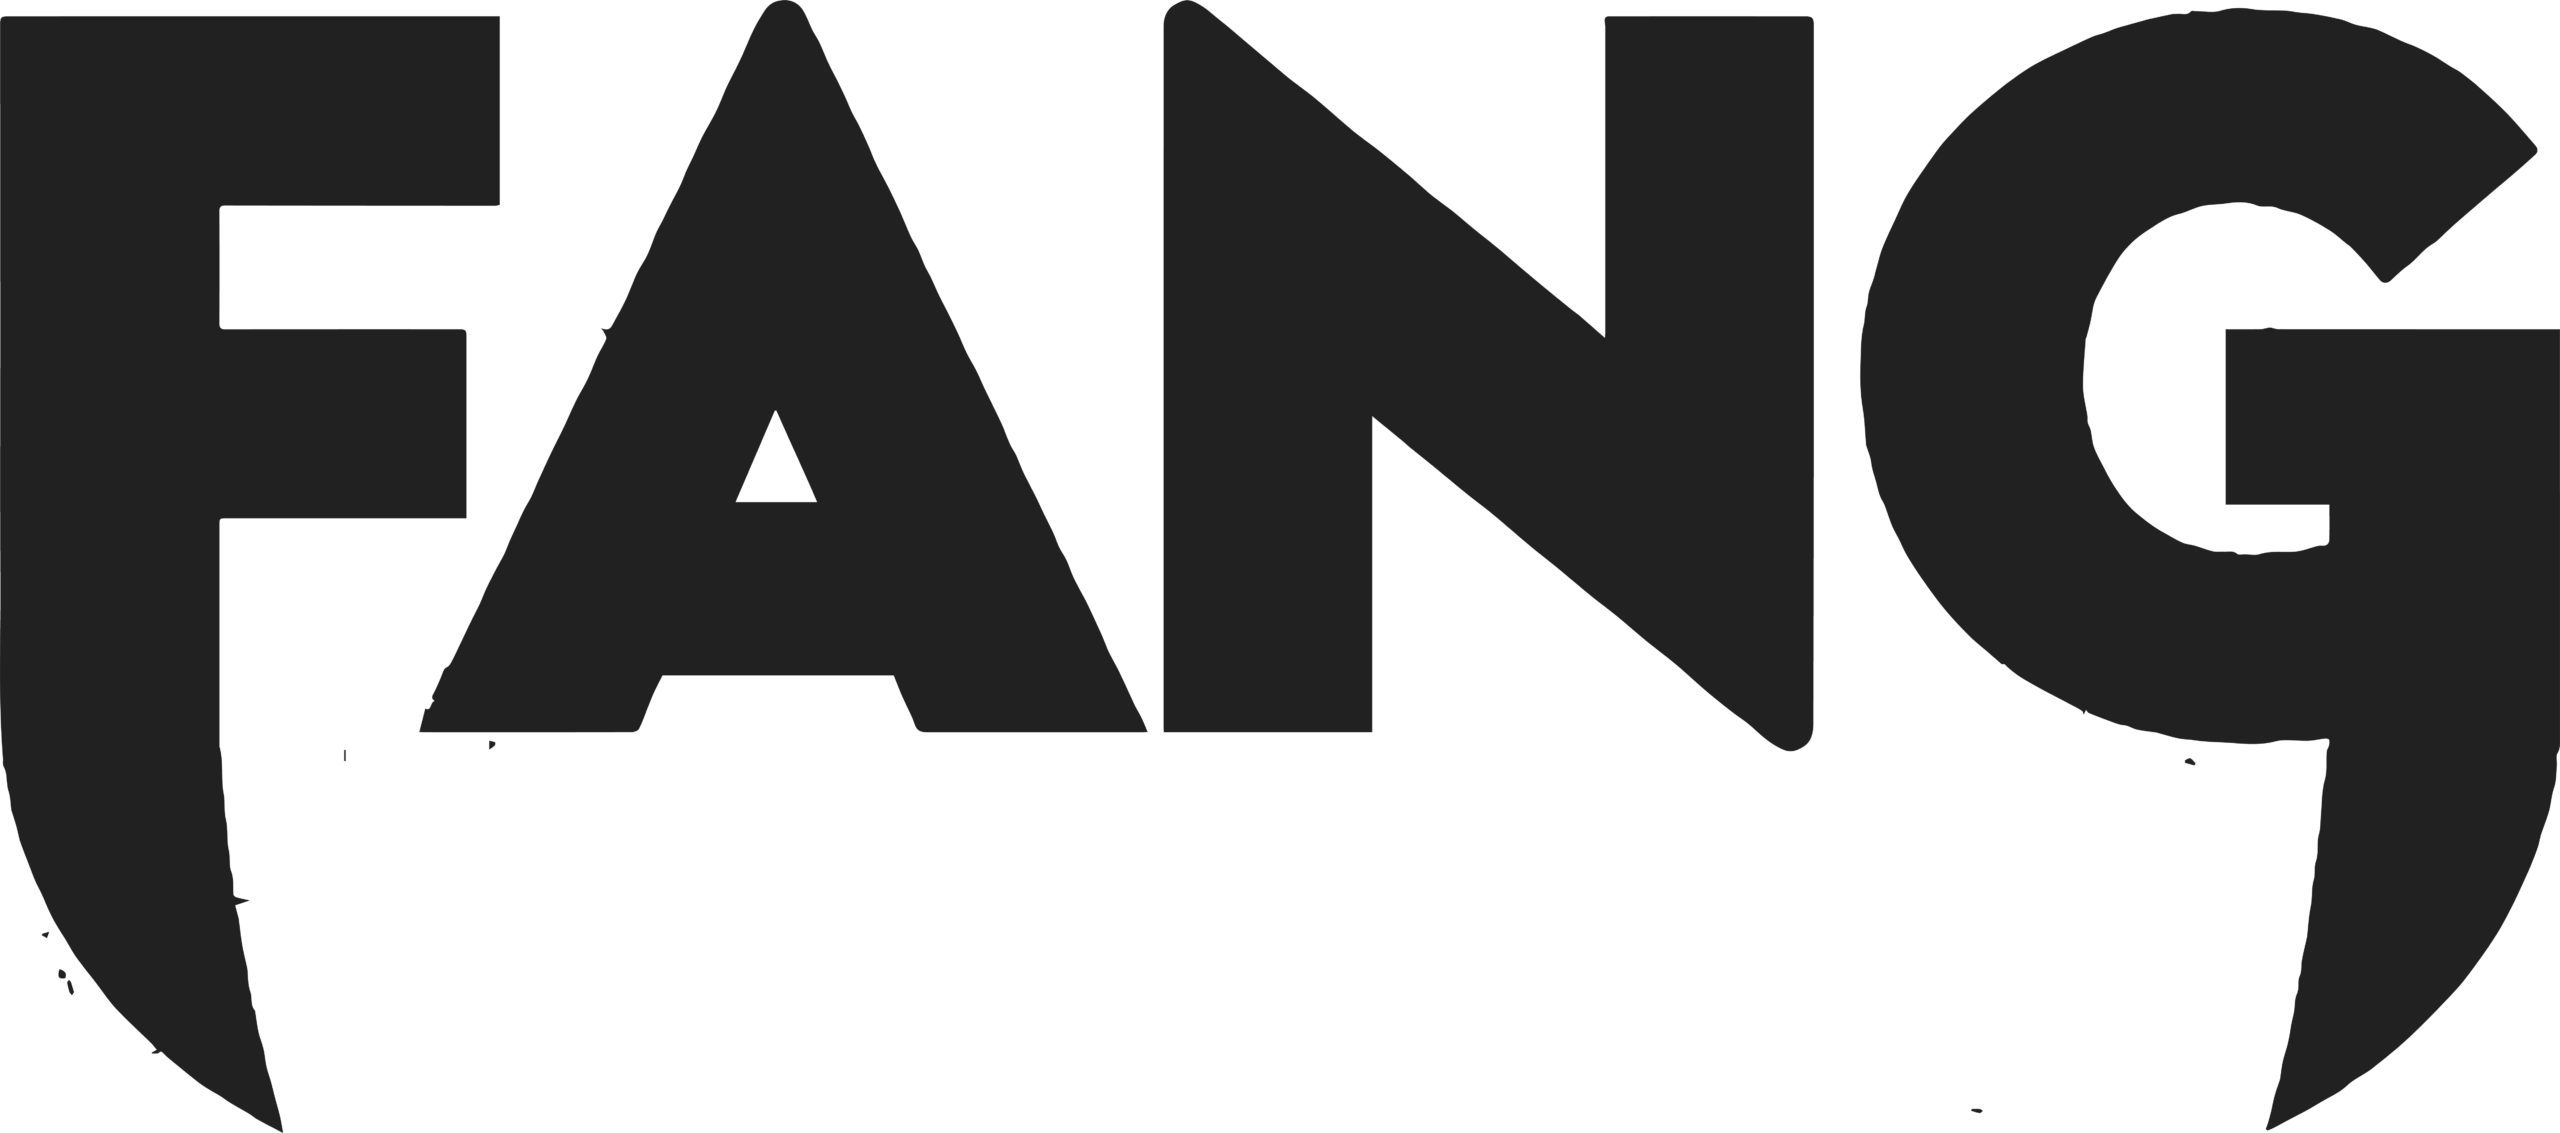 Fang Logo